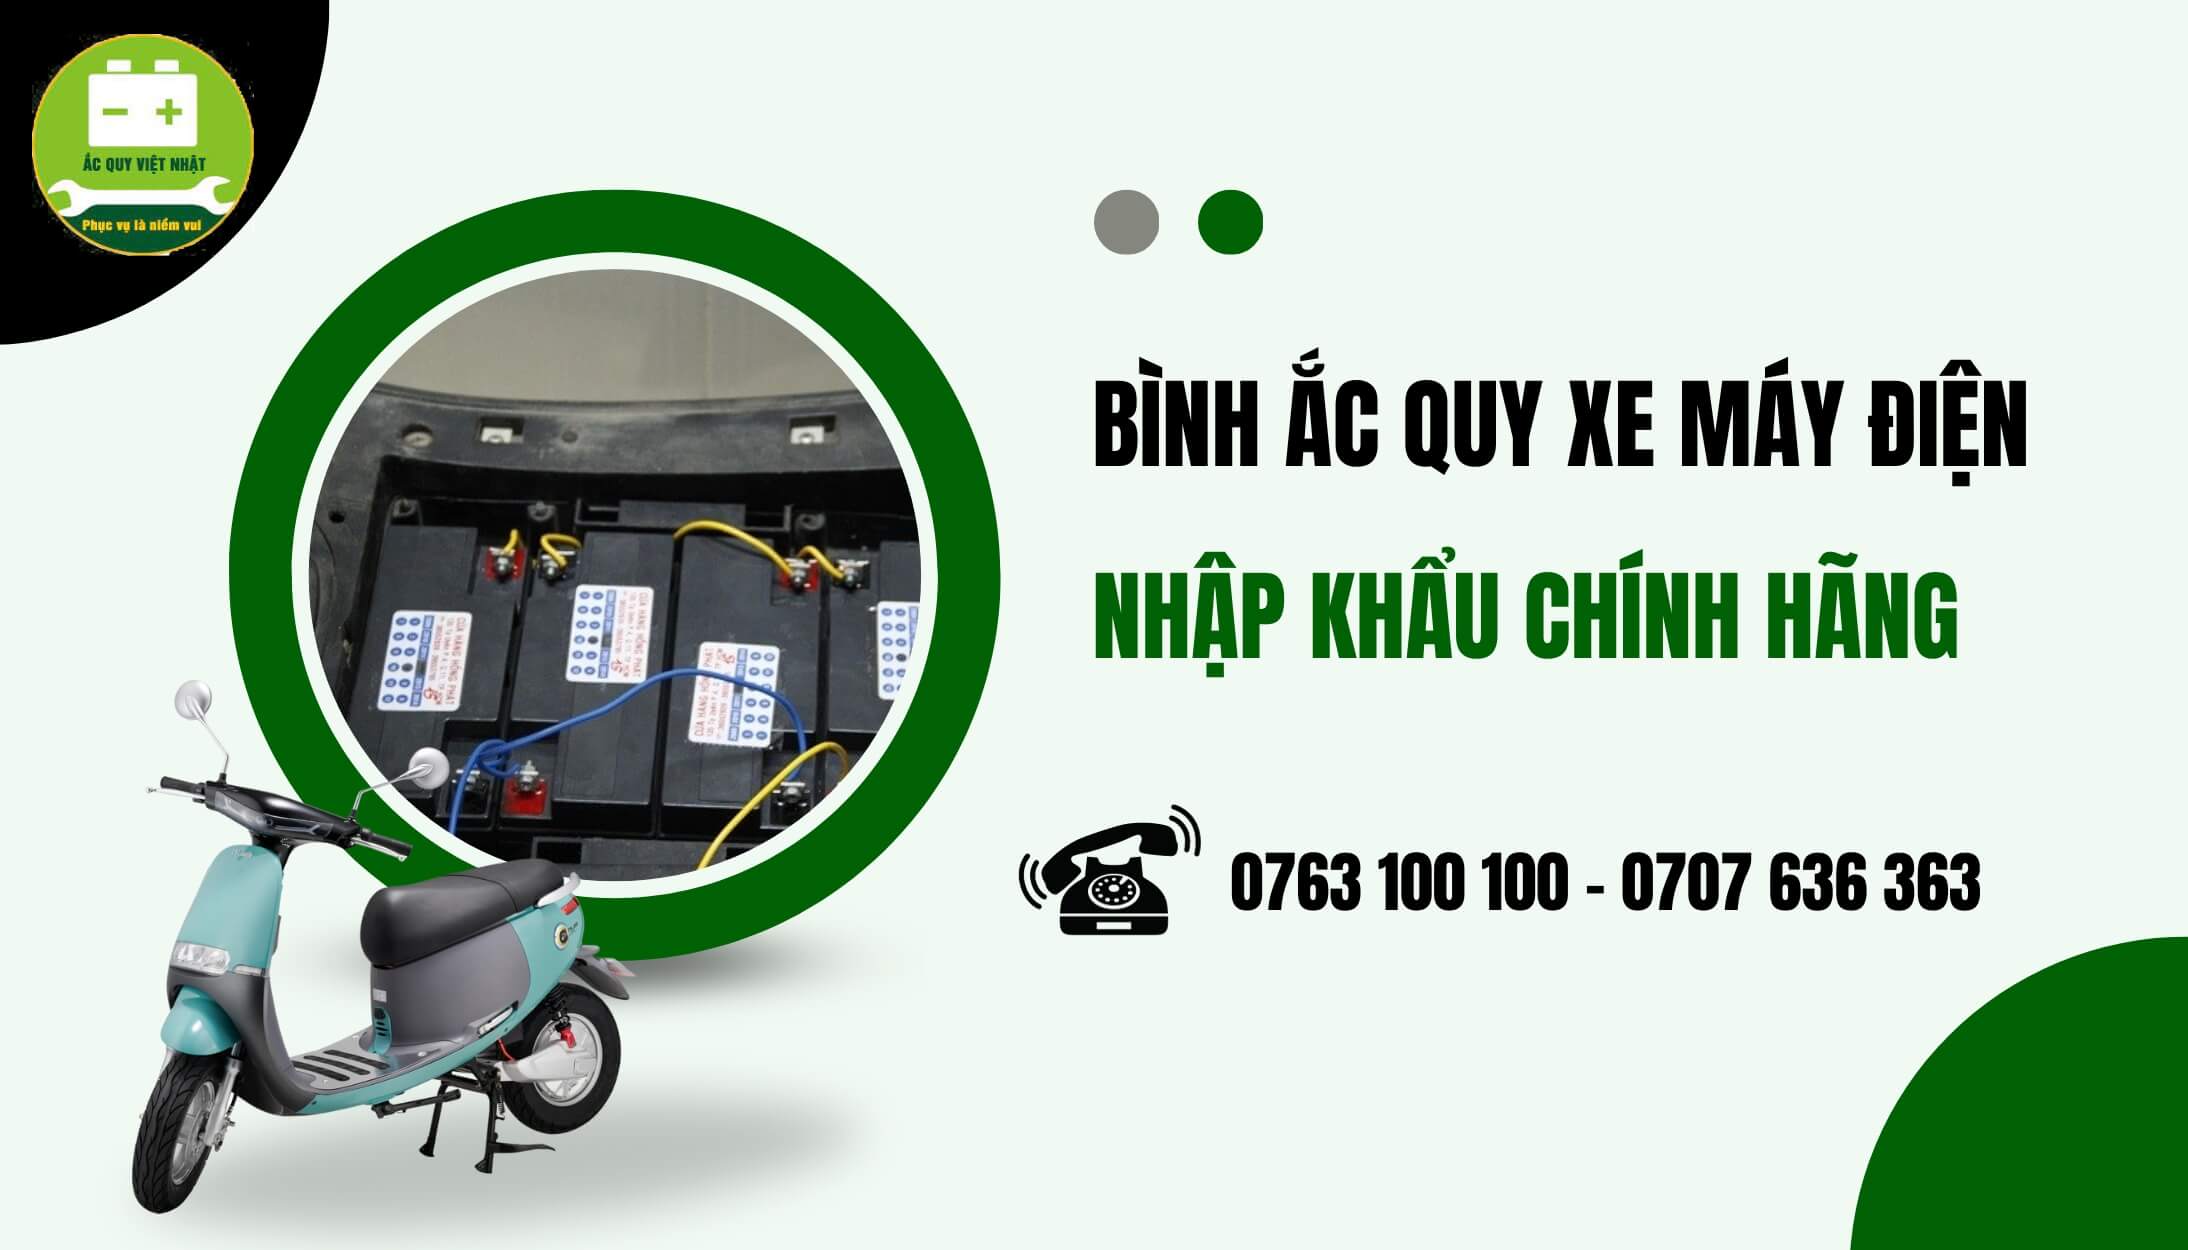 Mua ắc quy xe máy điện chính hãng tại Việt Nhật